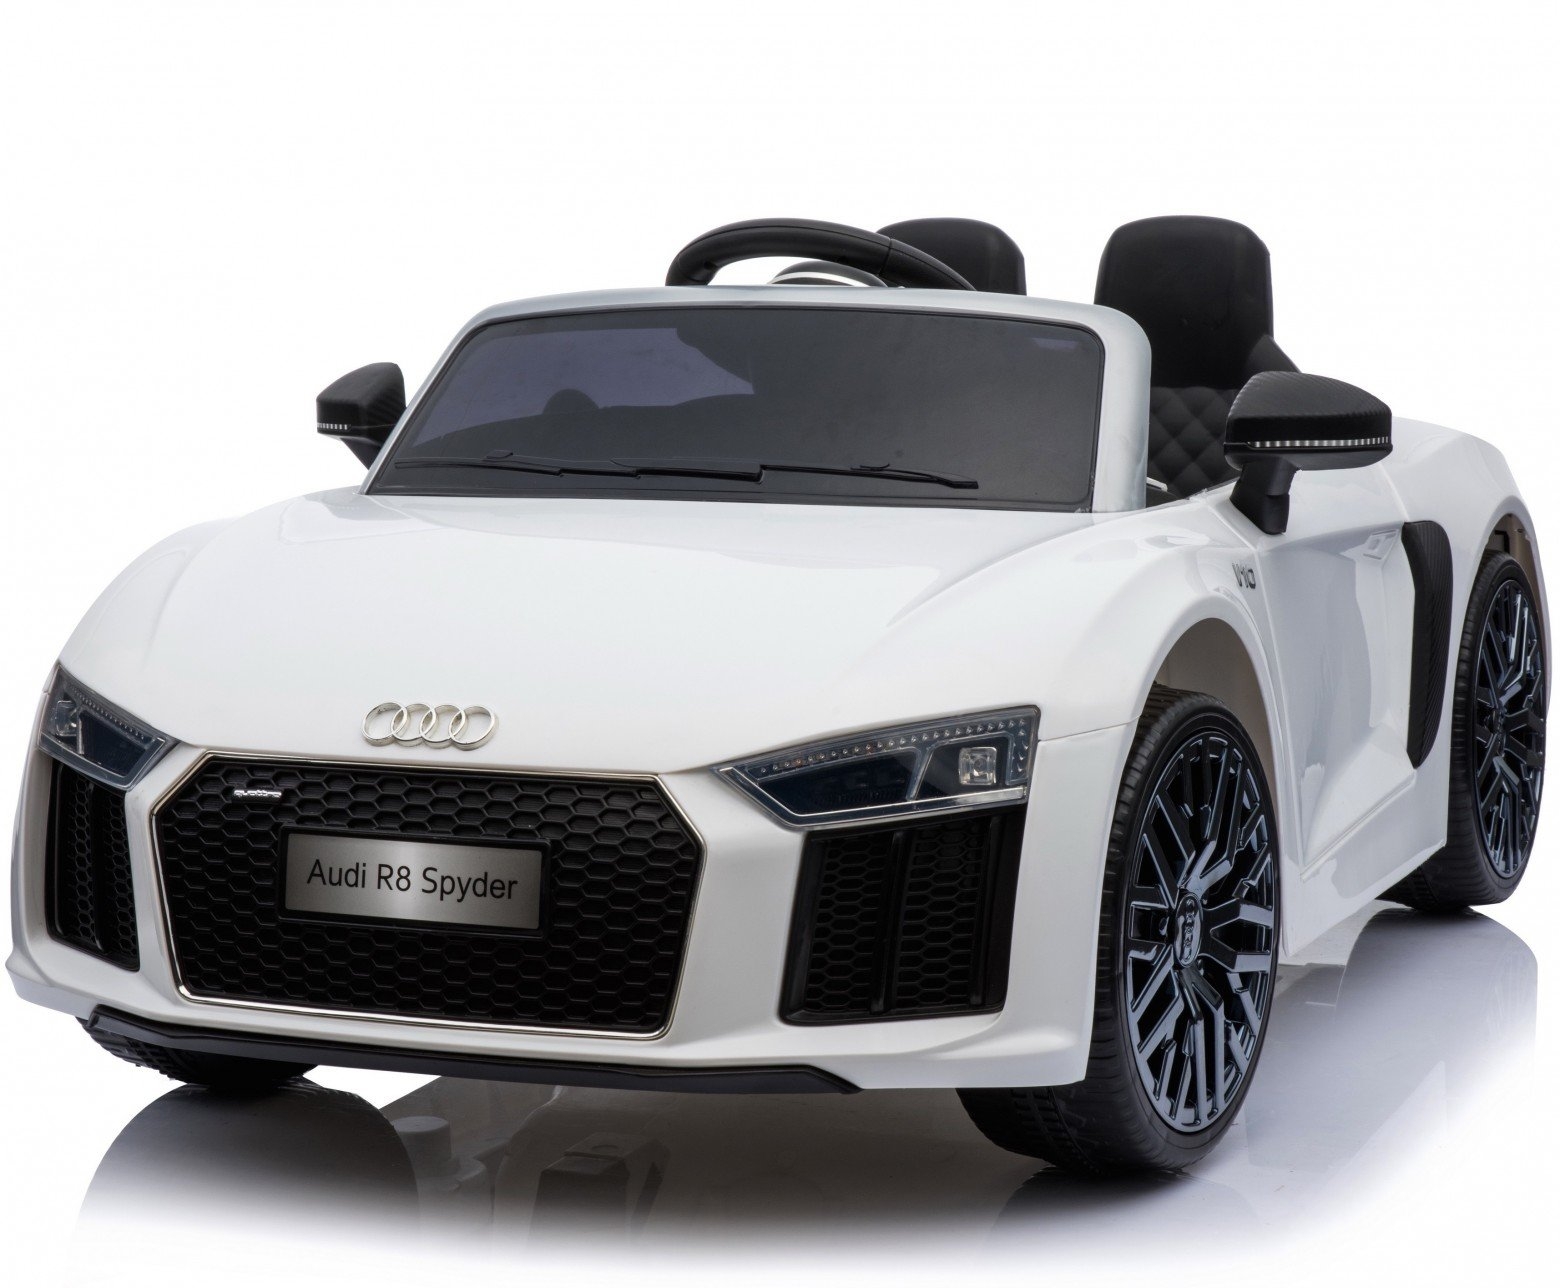 New Shape Licensed Audi R8 Spyder 12V ChildrenÛªs Electric Ride On Toy Car – White